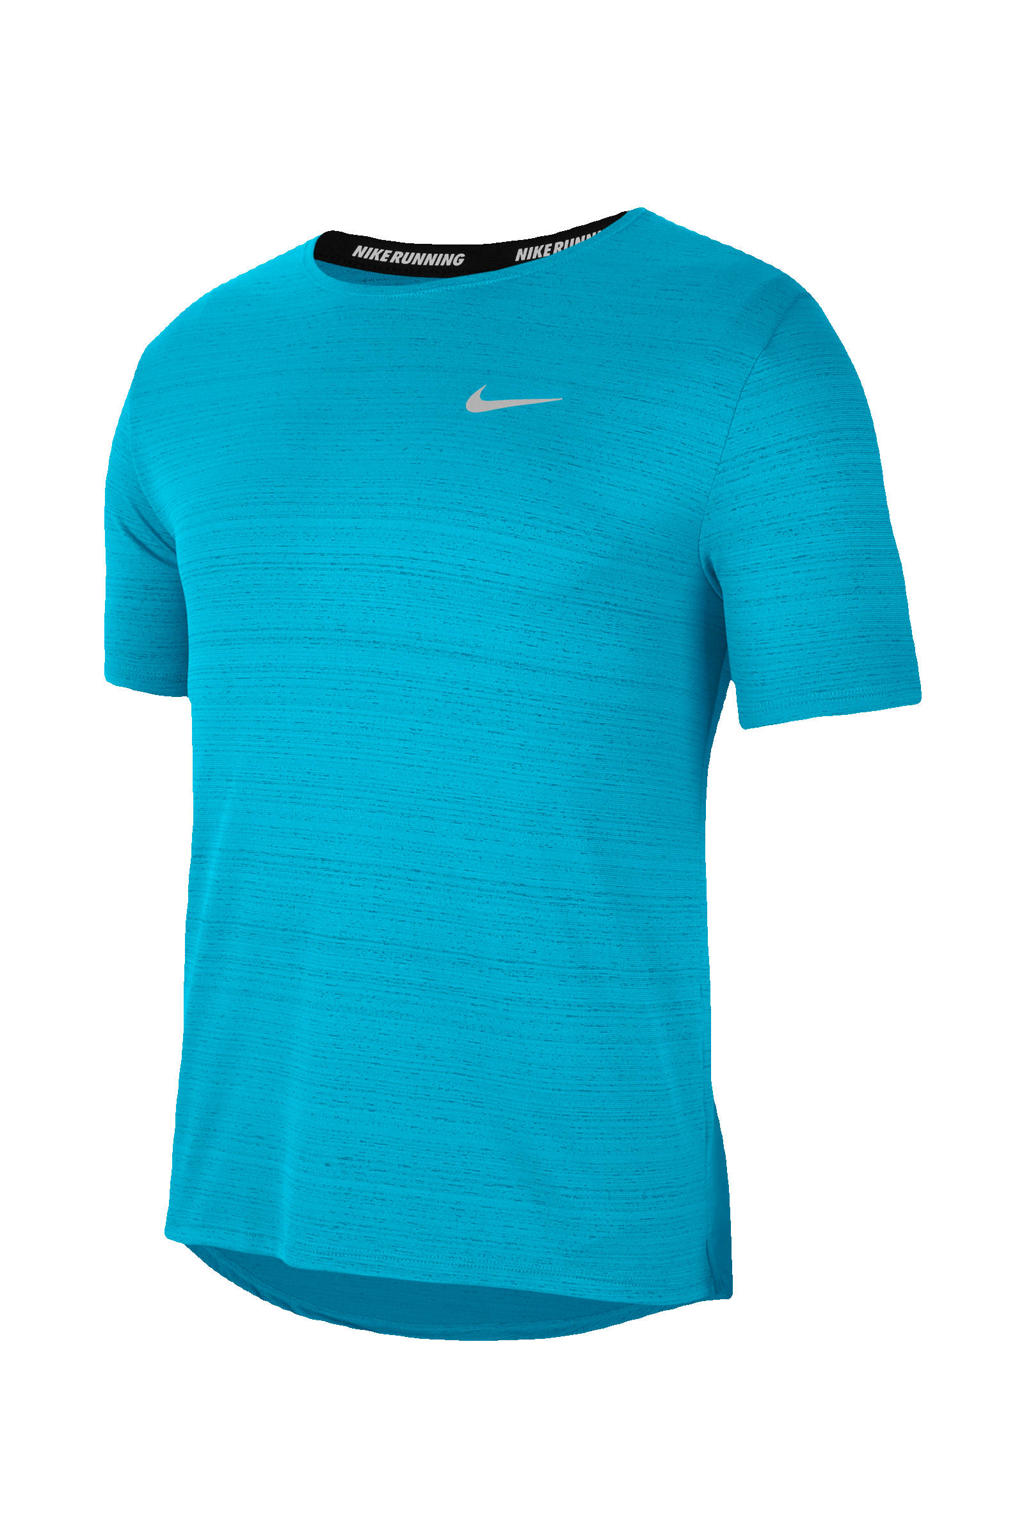 Nike   Hardloopshirt turquoise